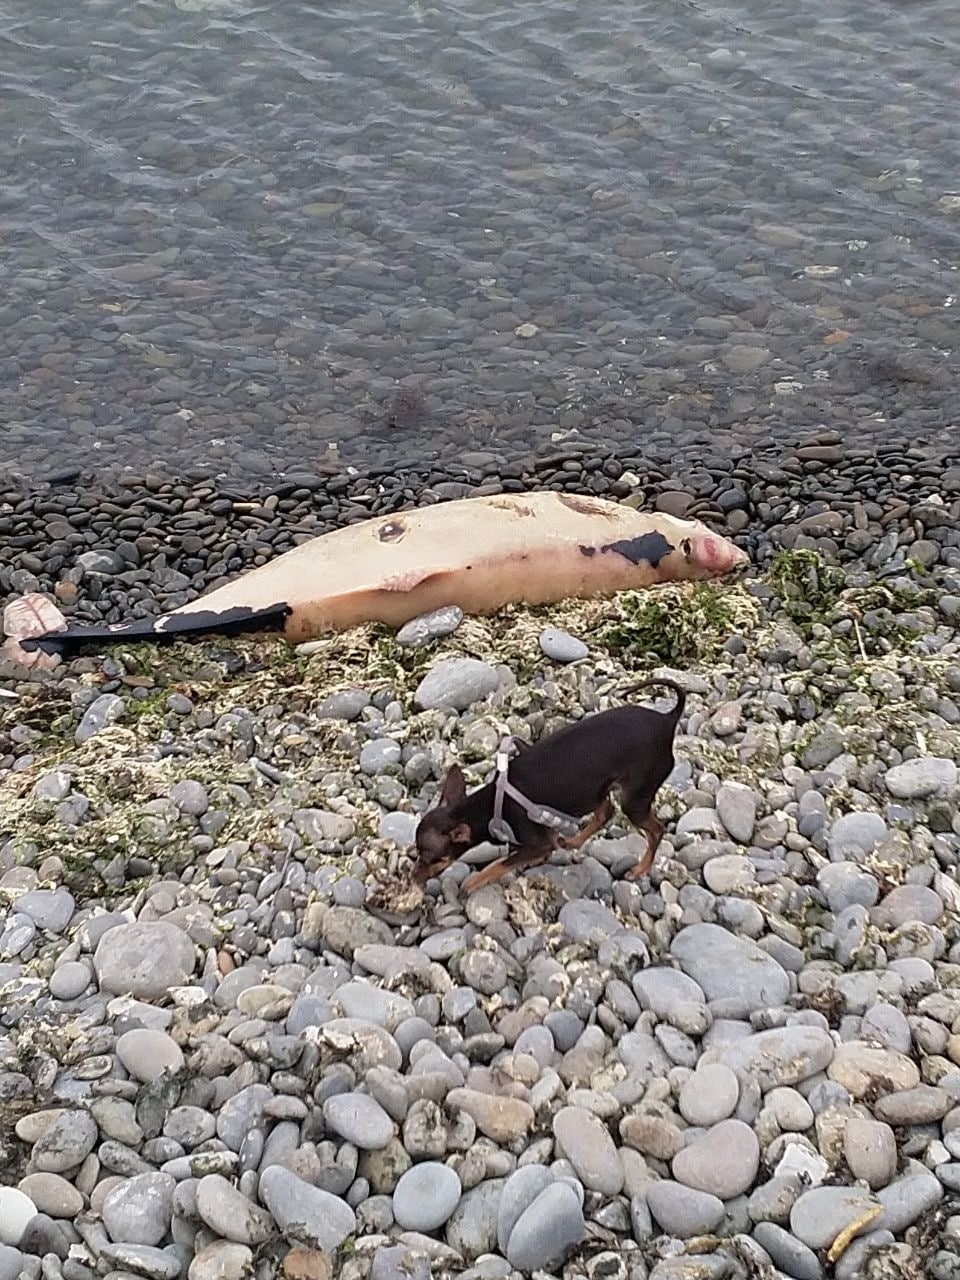 Под Новороссийском жители обнаружили на берегу дельфина с отрезанной головой